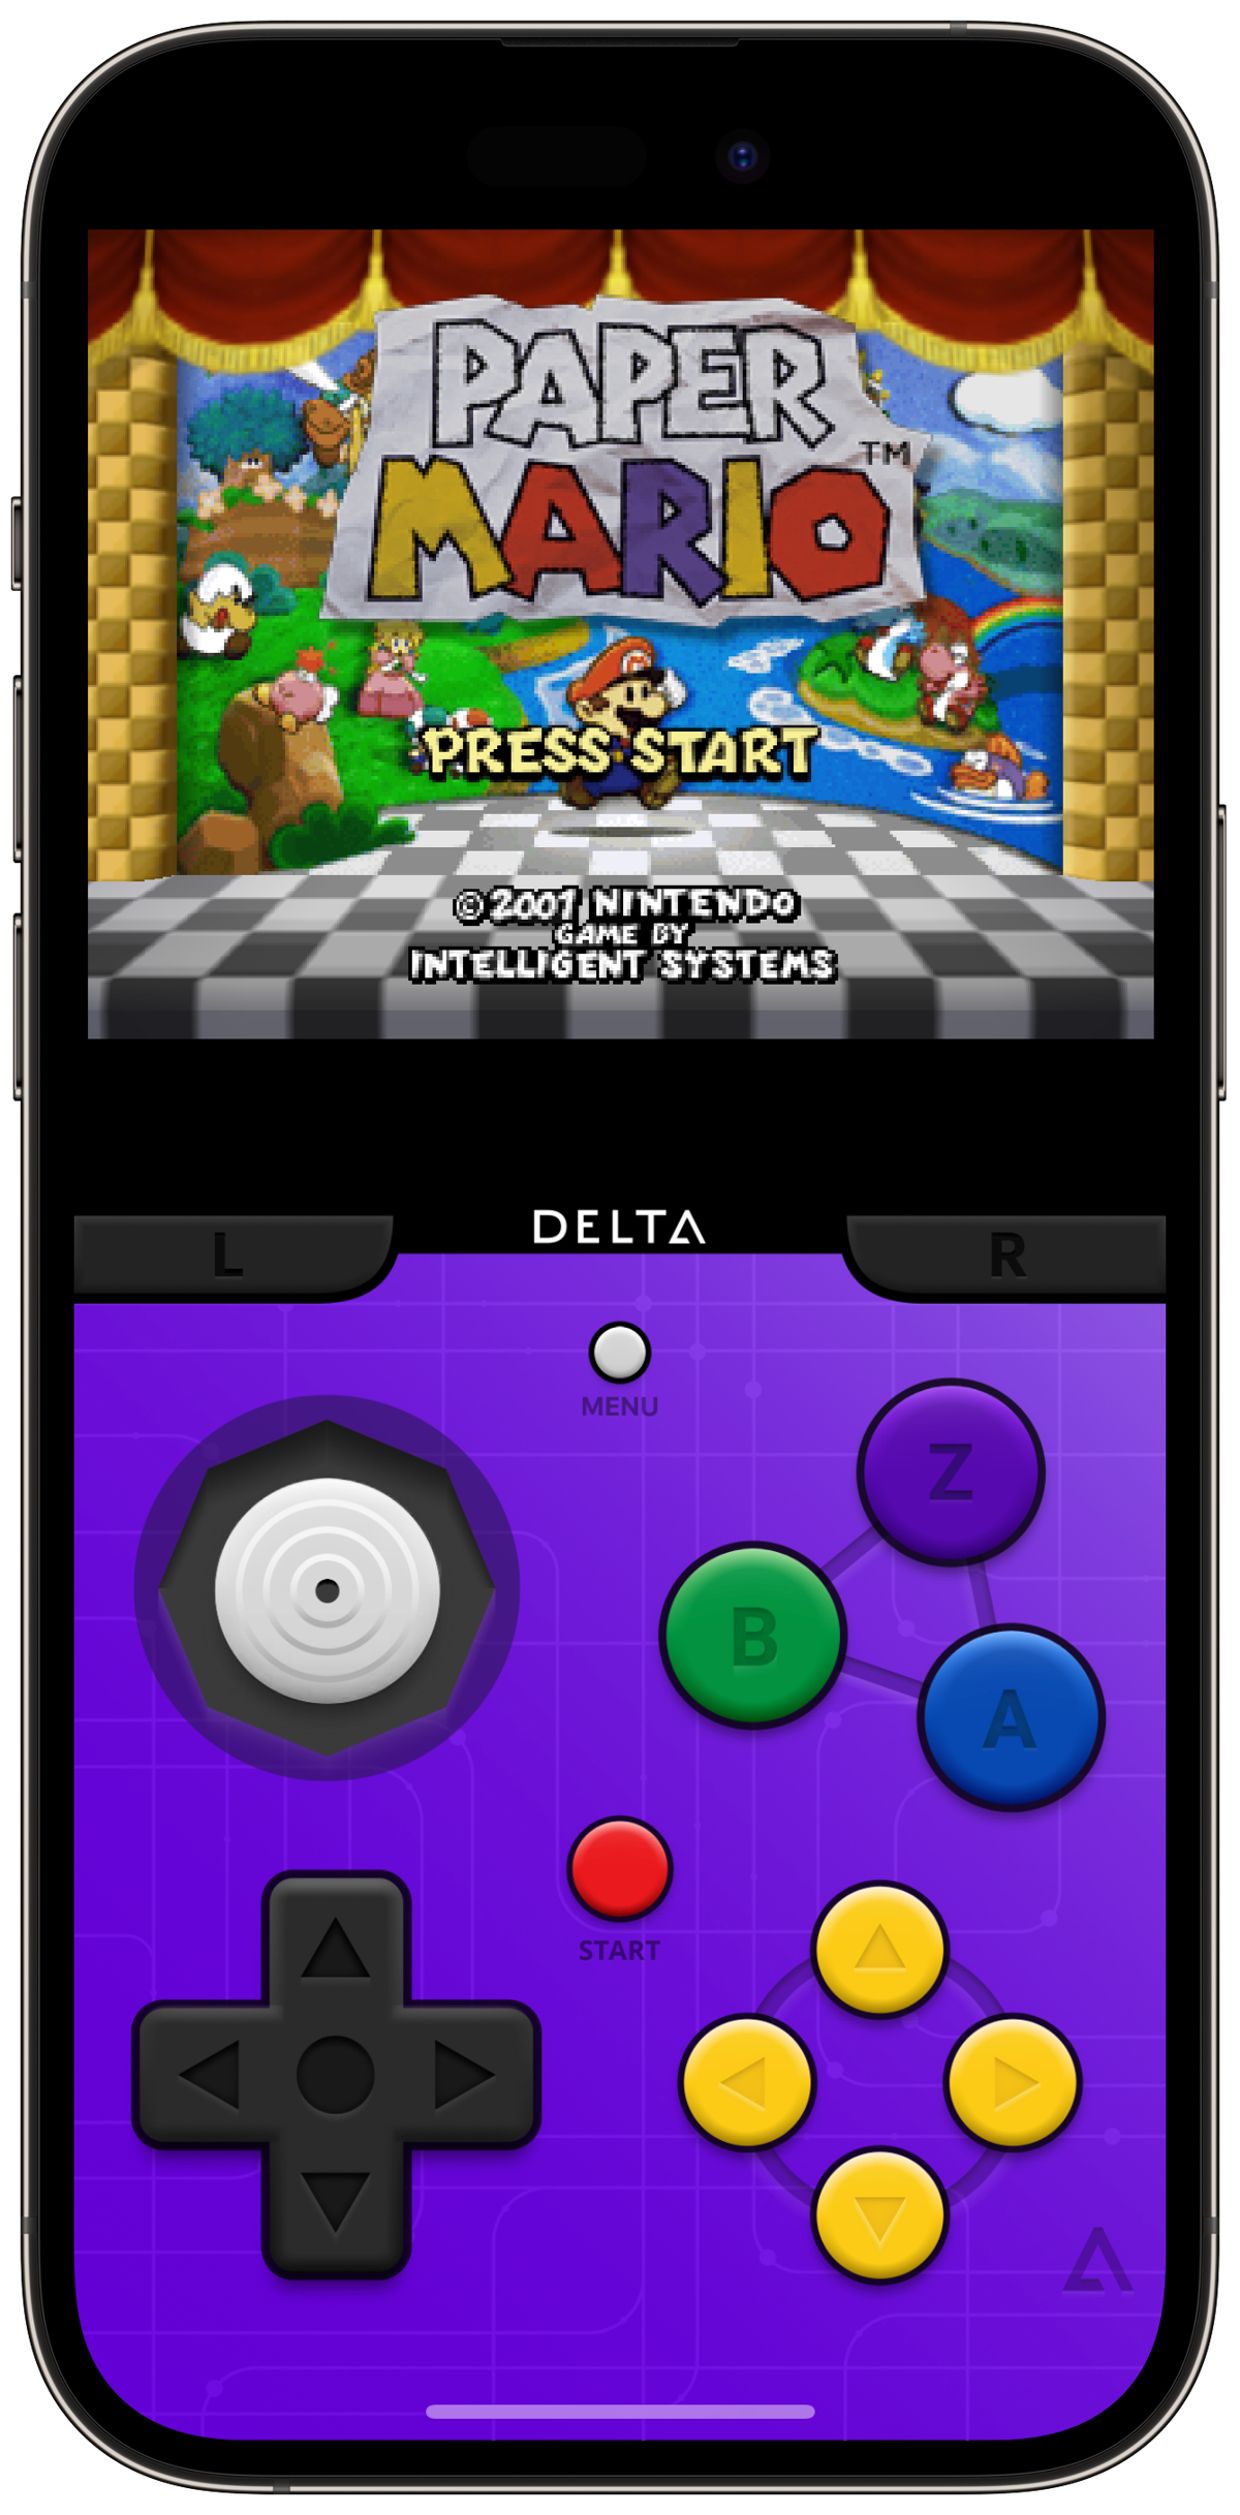 Delta Retro Game Emulator for iOS